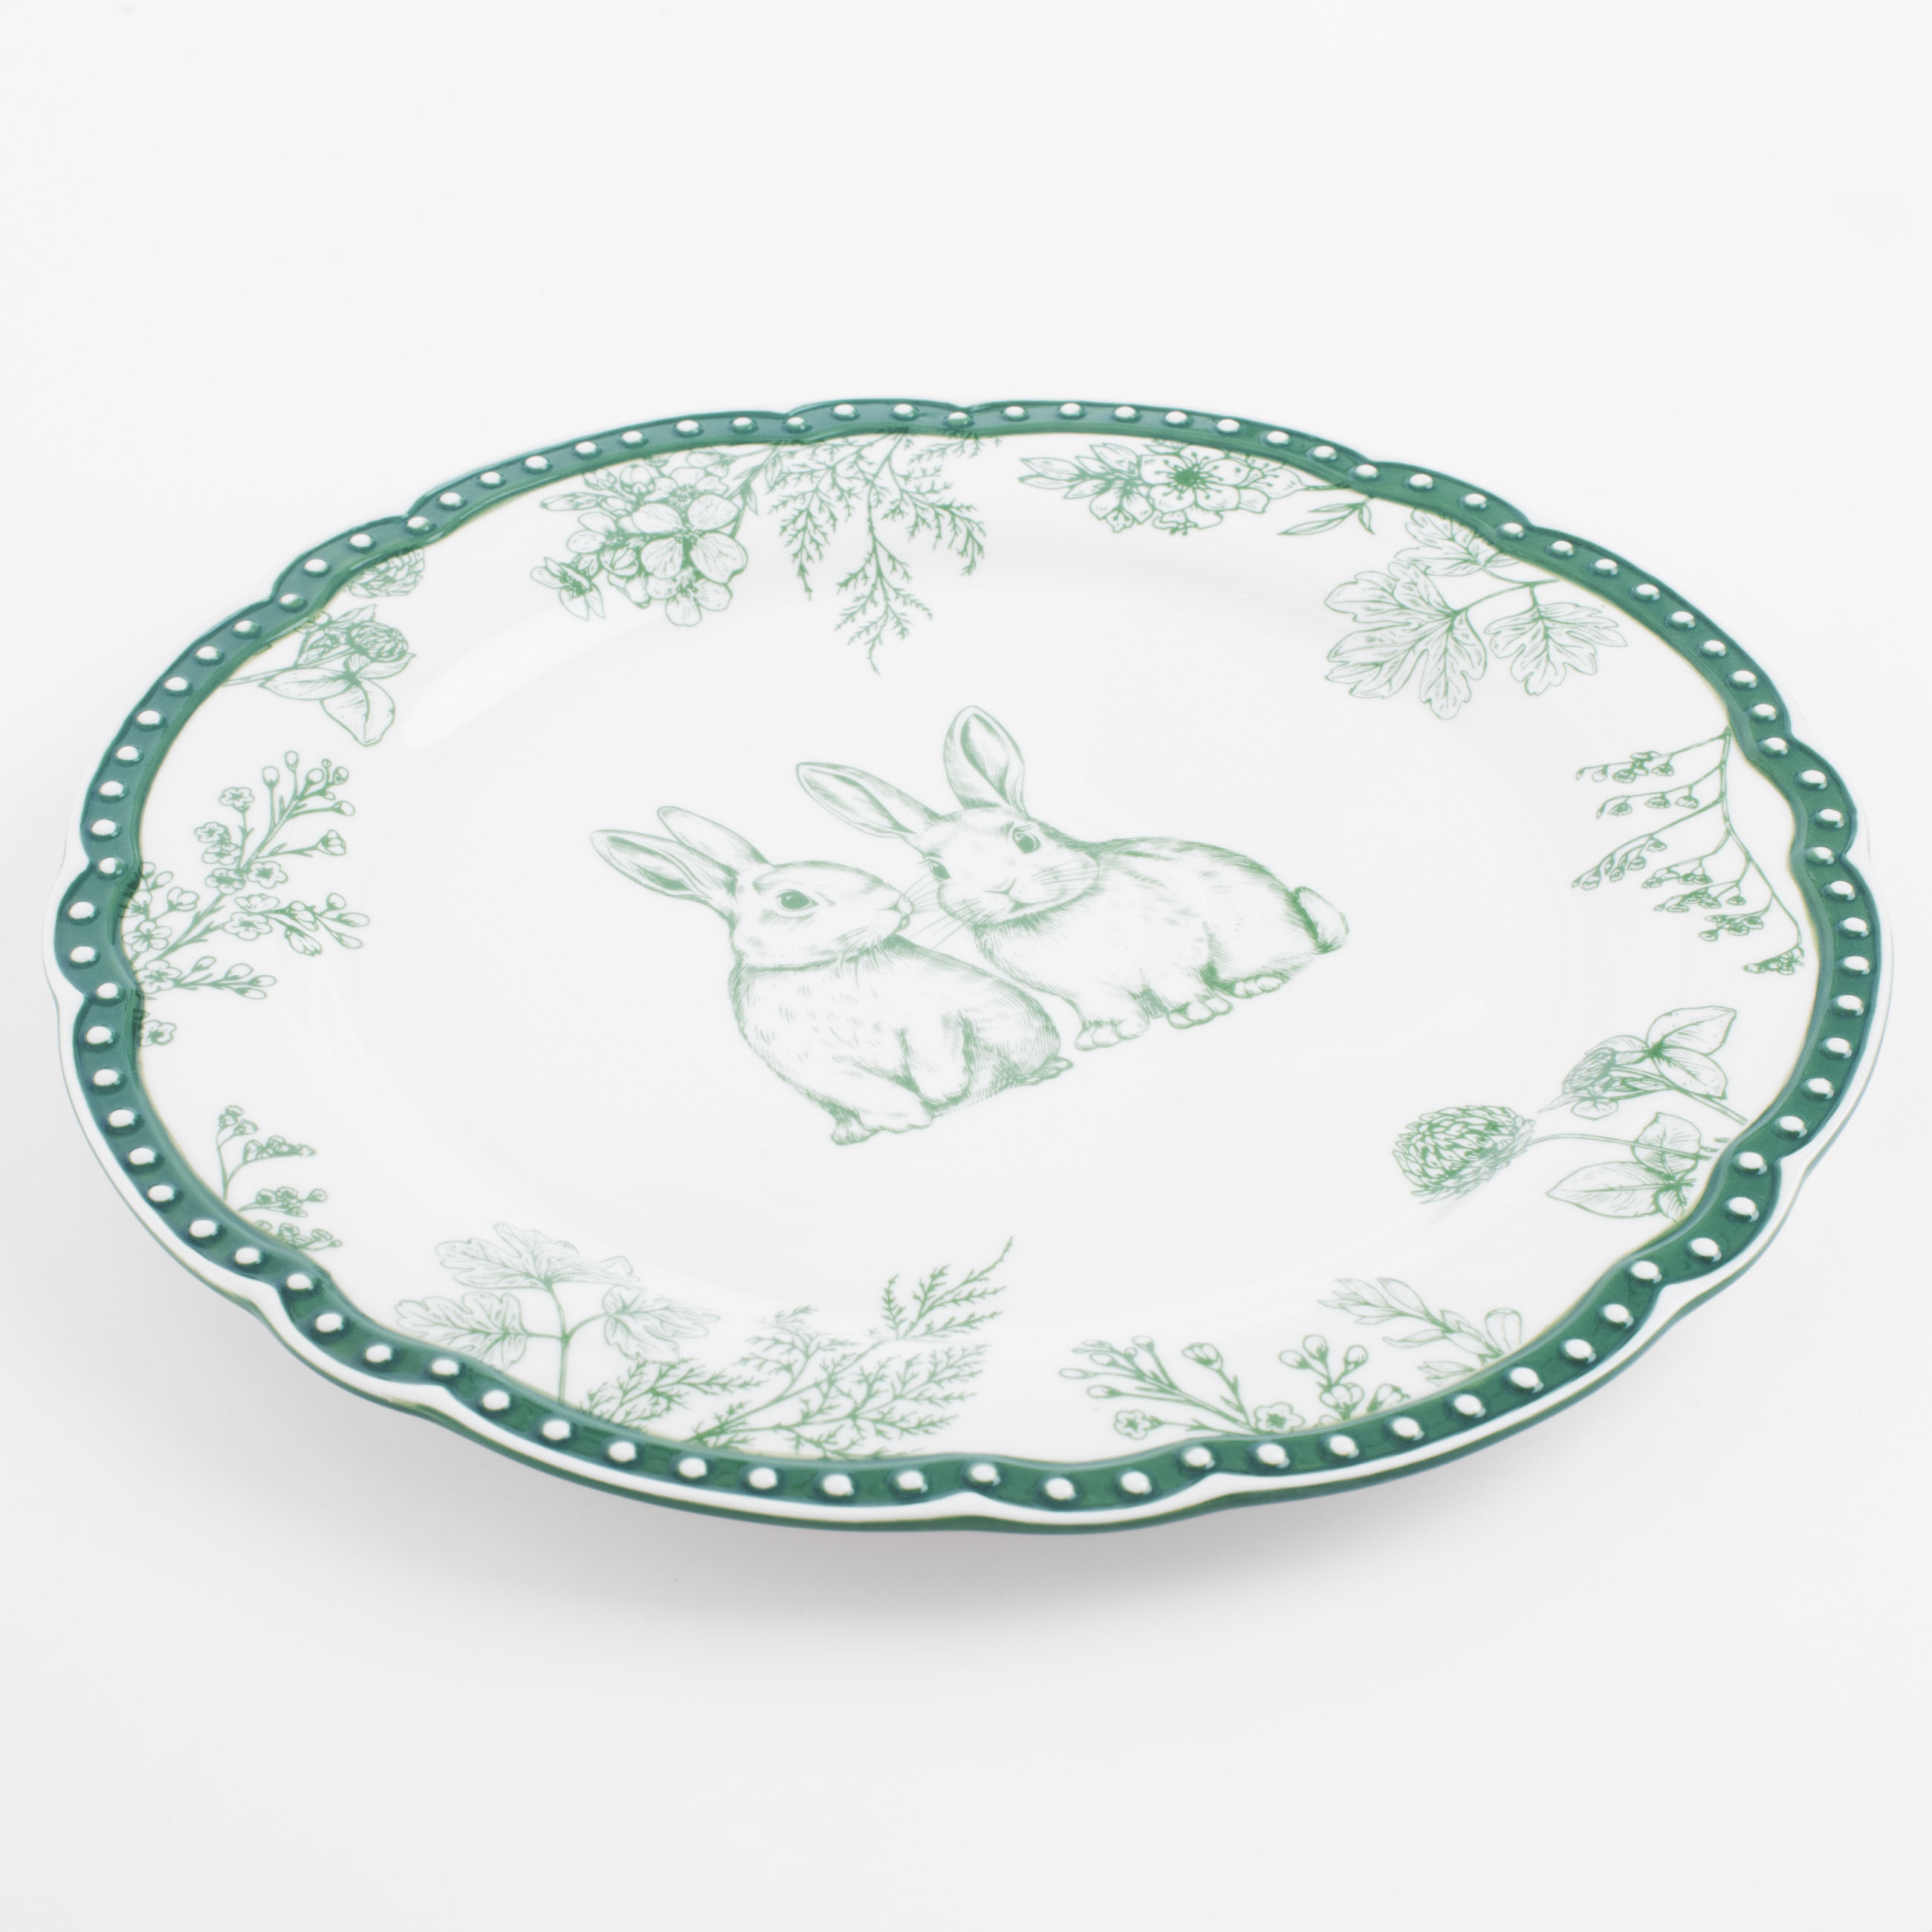 Тарелка обеденная, 27 см, керамика, бело-зеленая, Кролики и цветы, Easter blooming изображение № 2